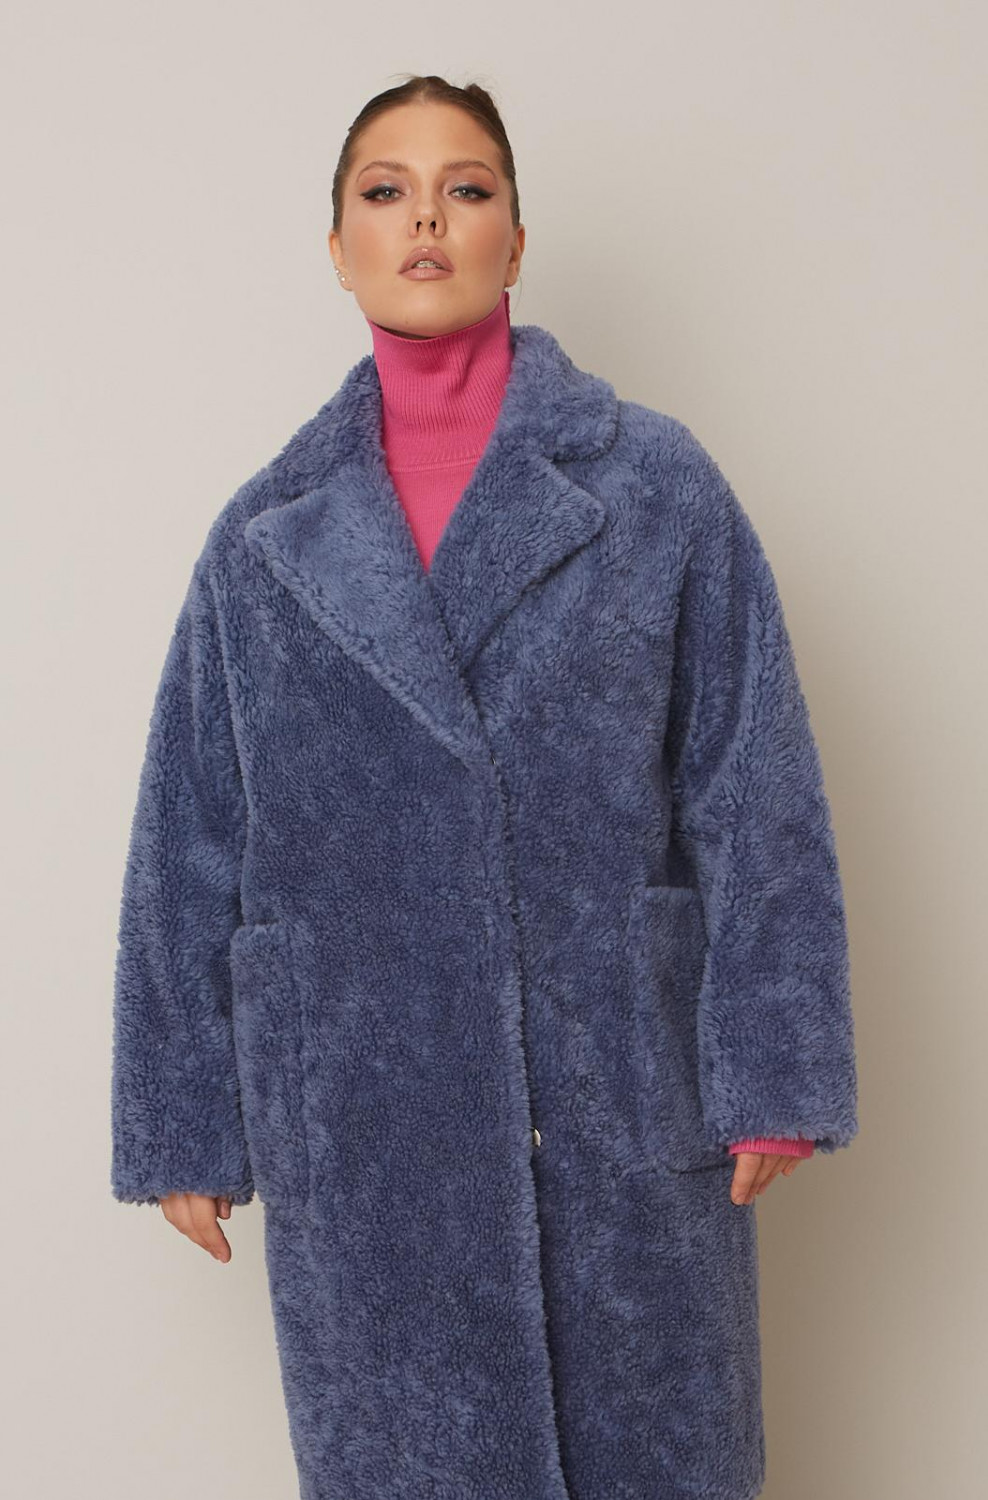 Меховое пальто из шерсти мериноса с накладными карманами купить с доставкой по Москве 